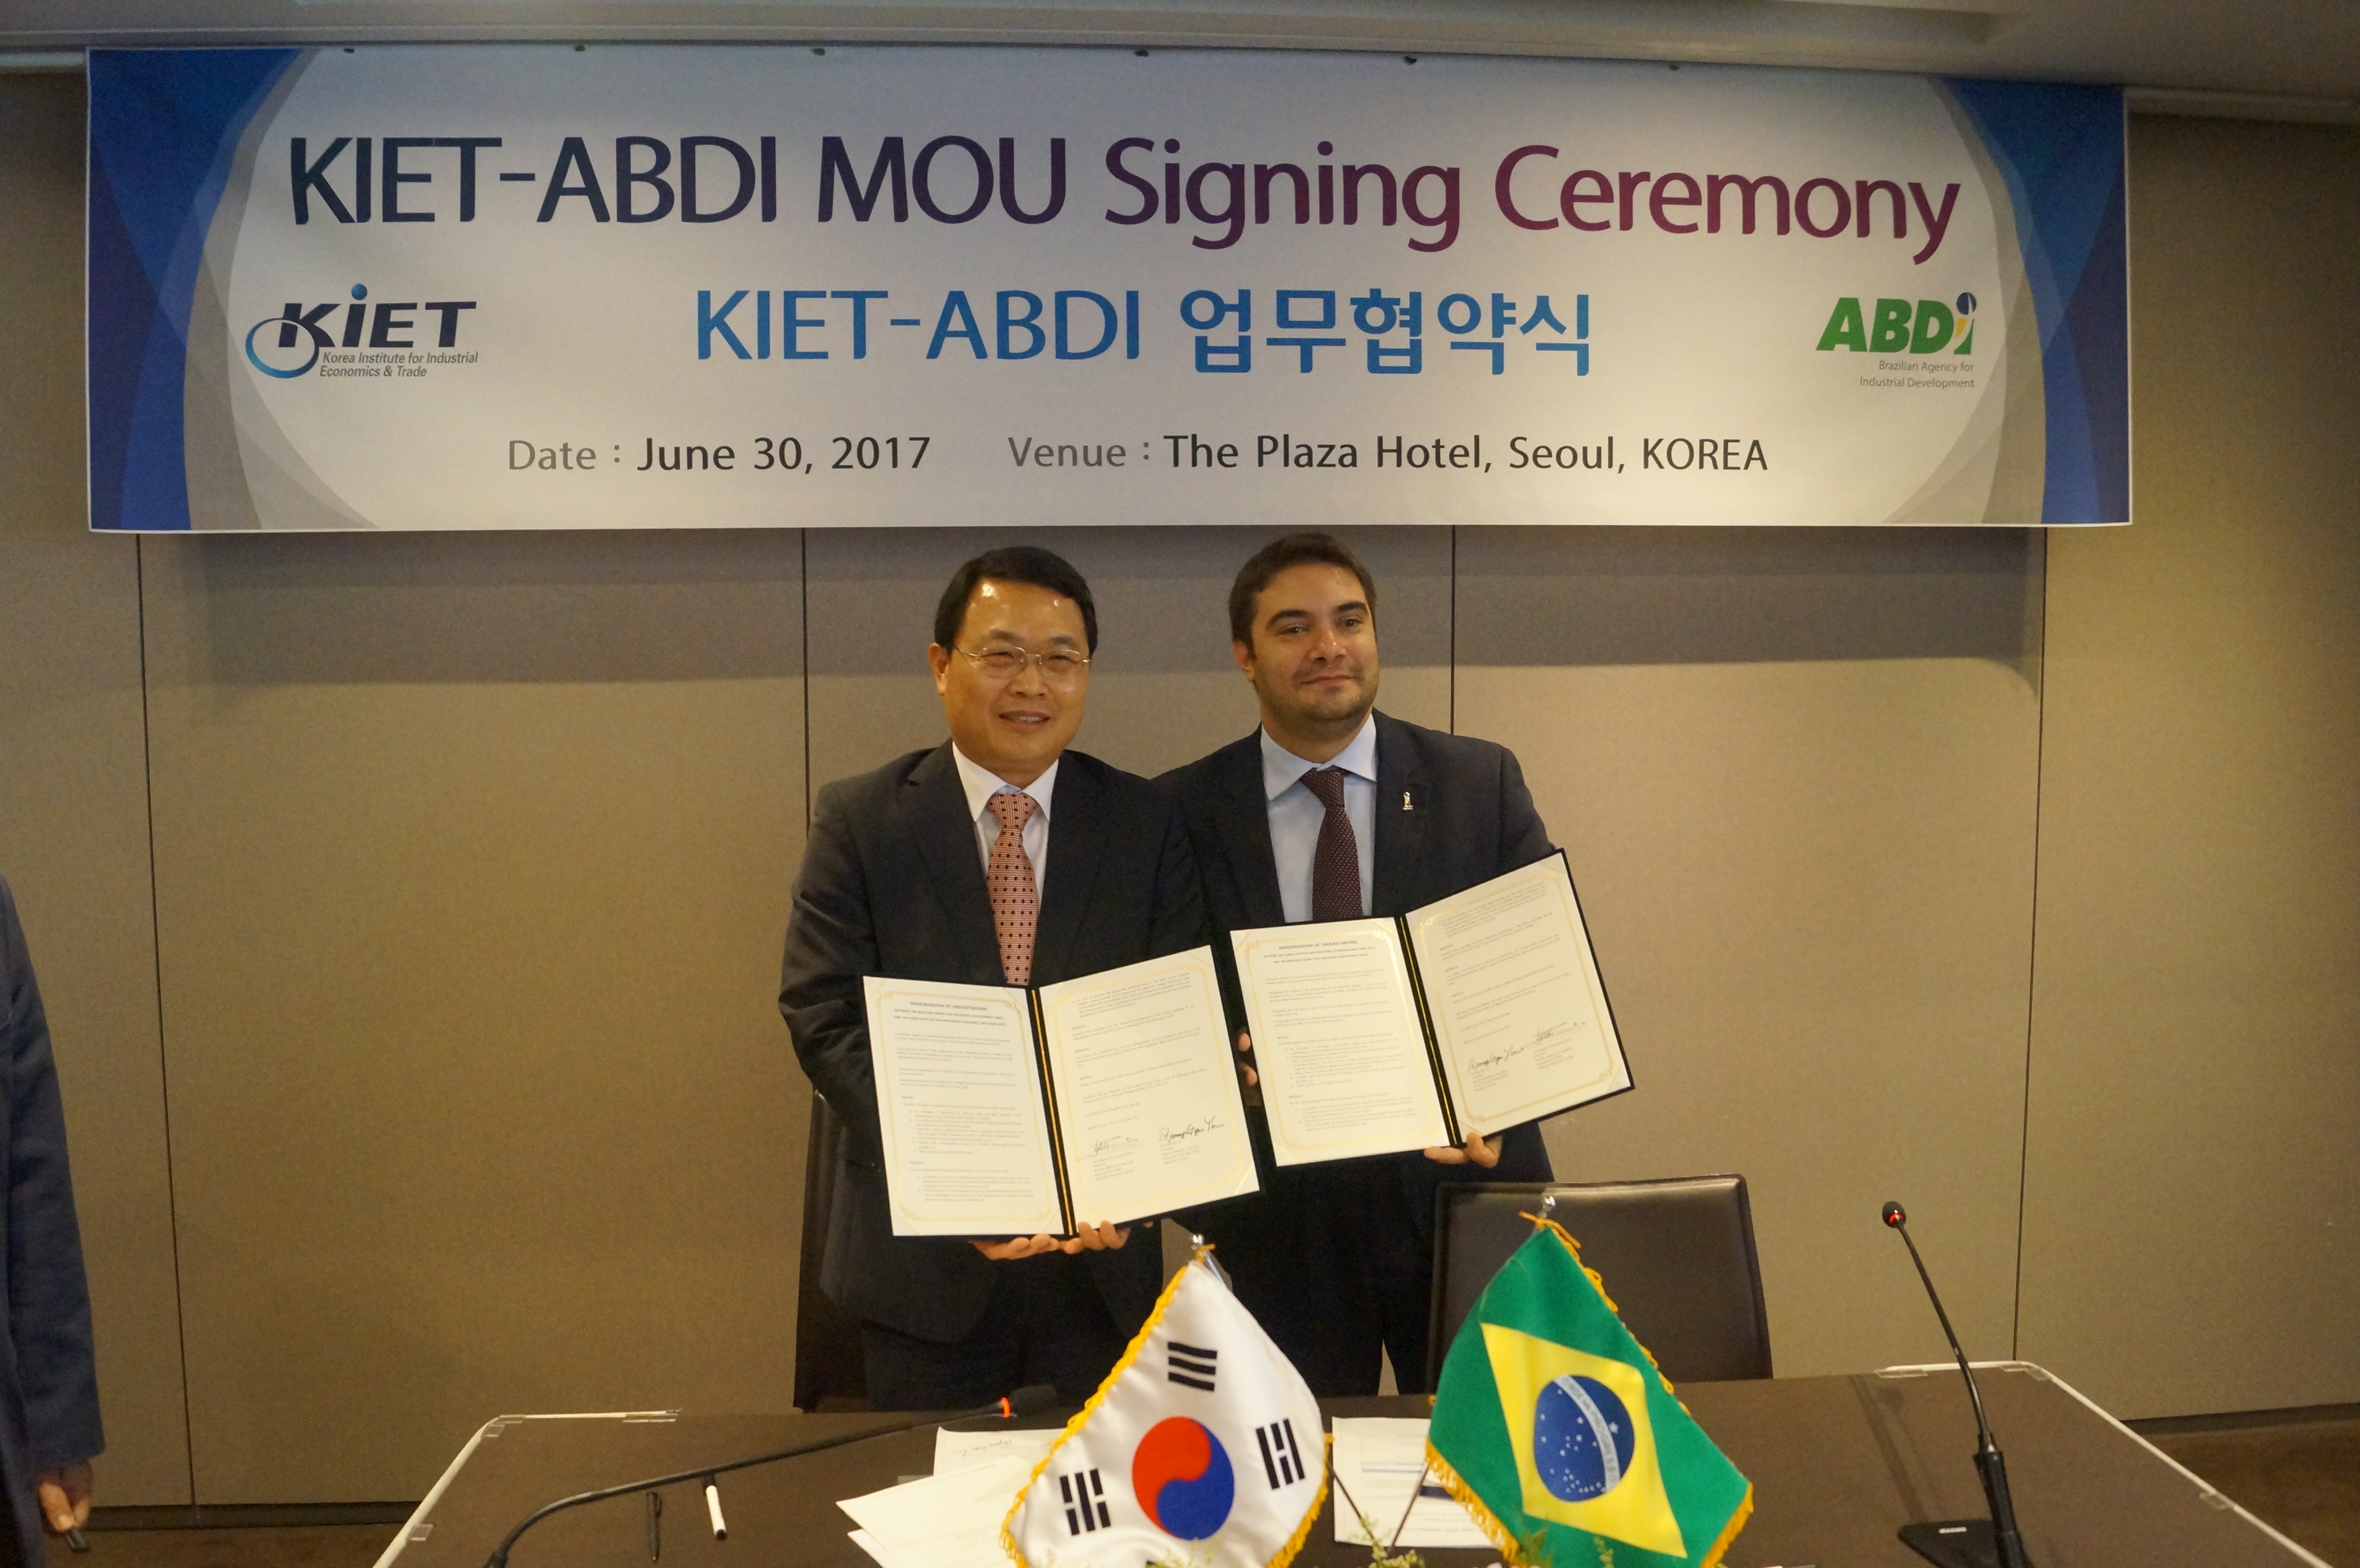 브라질 산업개발청 (Brazilian Agency for Industrial Development, ABDI) 와의 업무협약 체결